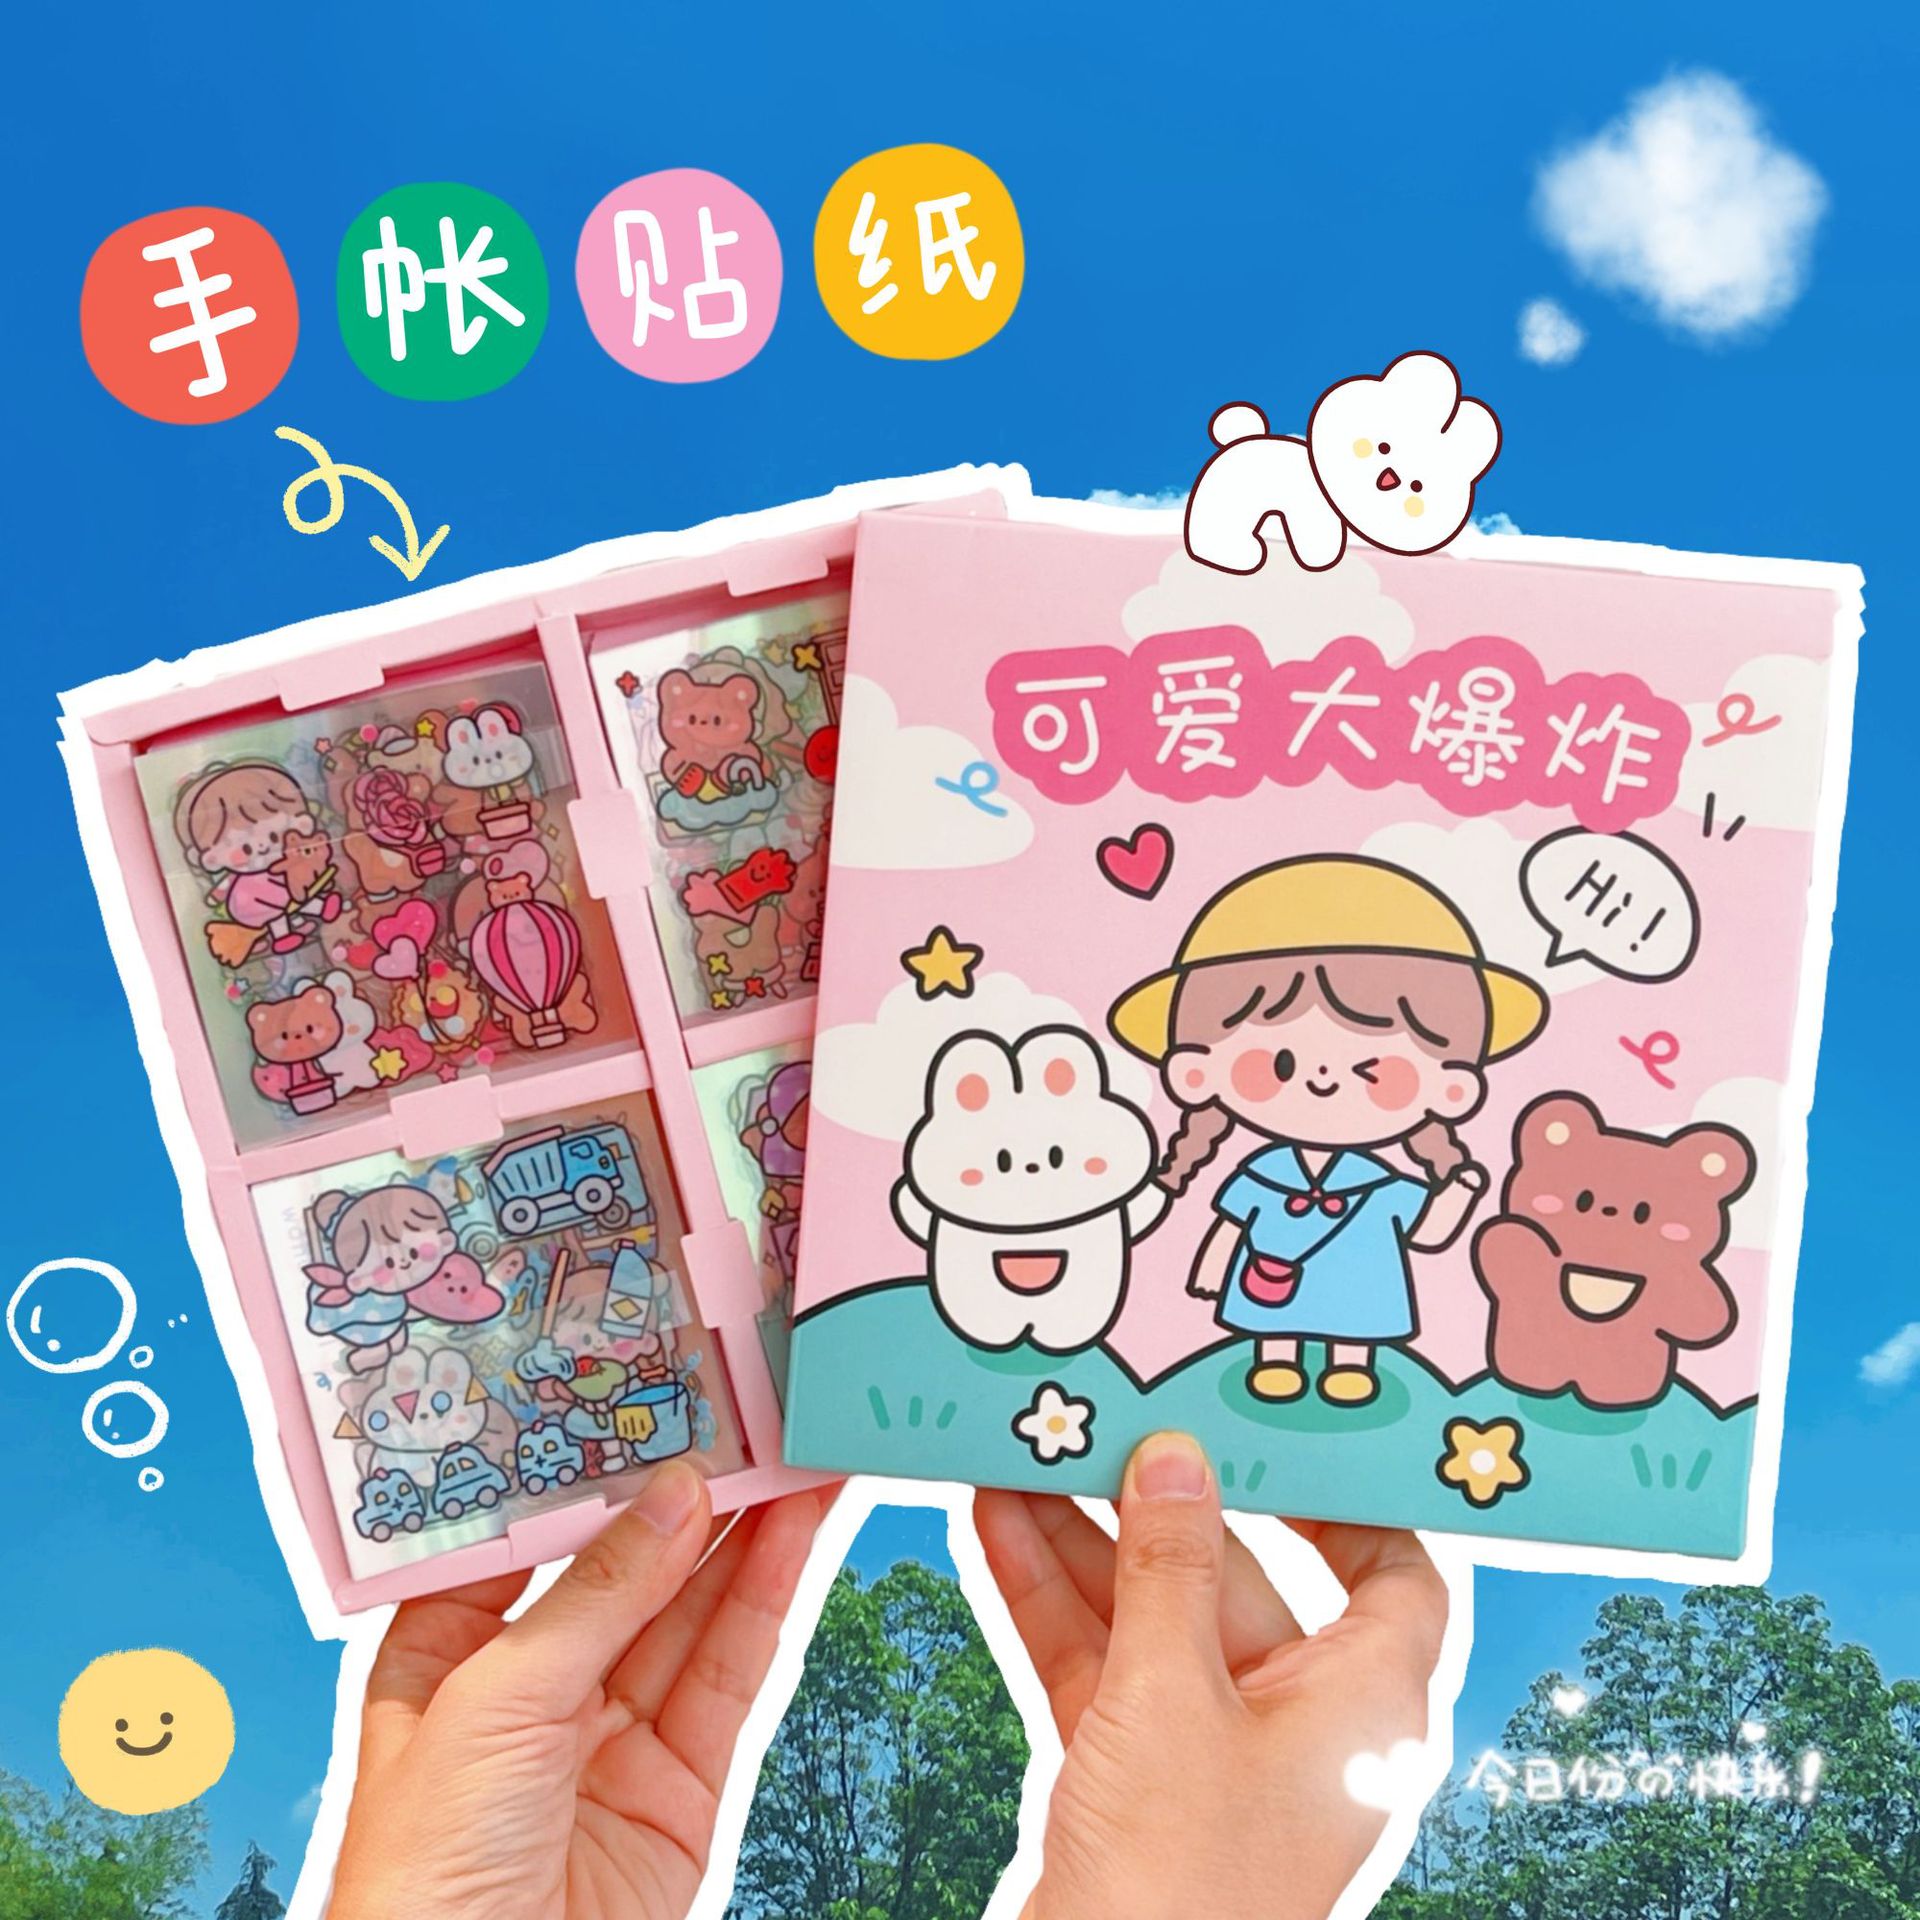 Tengyi Premium 100 Sheets Handbook Sticker Set Cute Cartoon Handbook Sticker Material Decoration Pattern Gift Pack